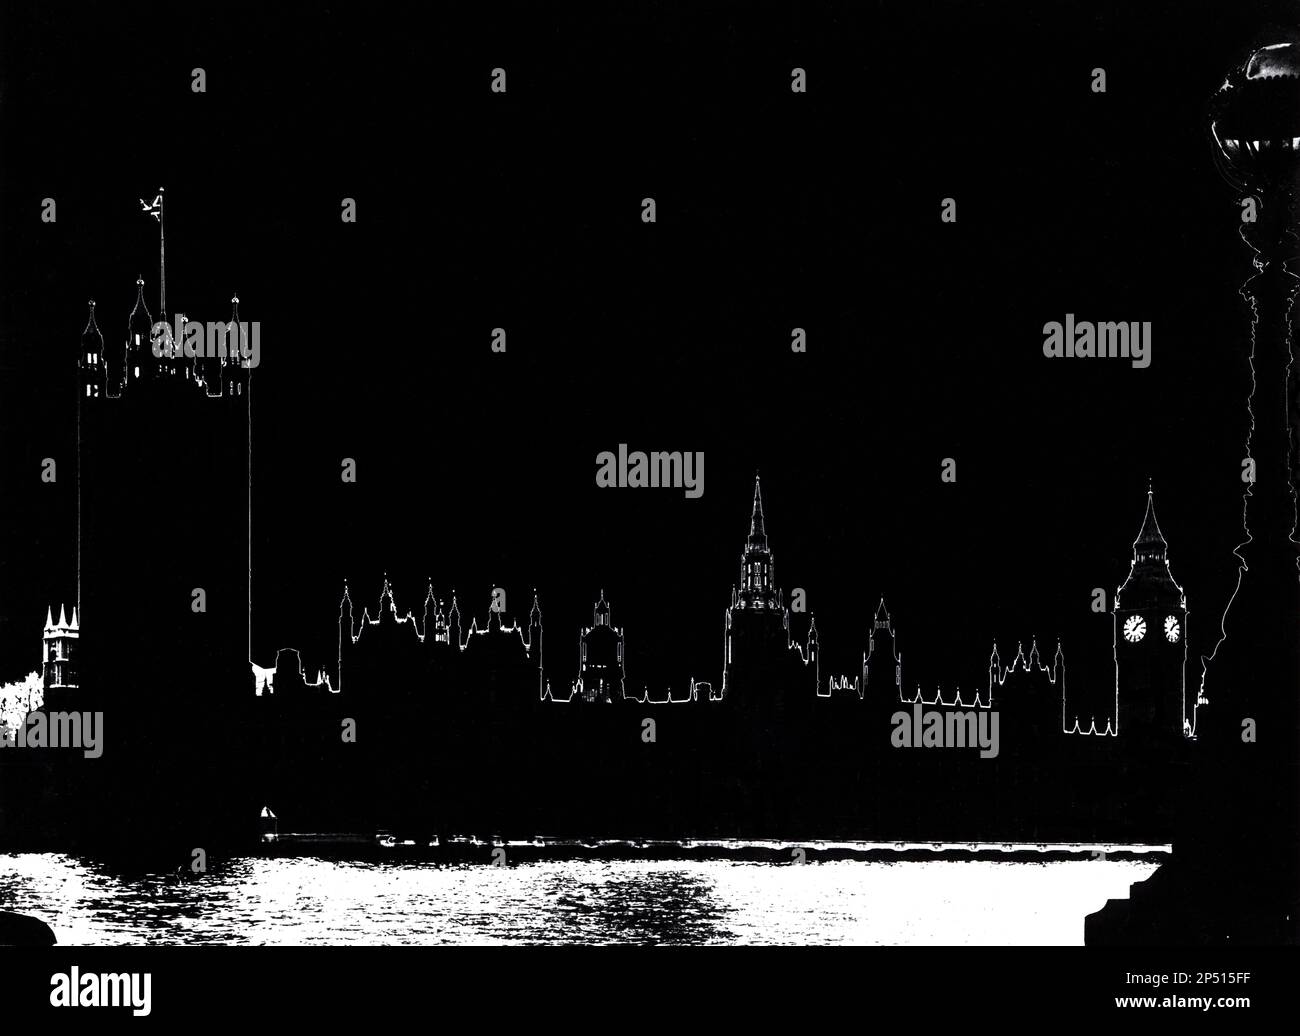 Una tradizionale stampa a effetto sabattier realizzata con processi di camera oscura bagnata nel 1970 delle Houses of Parliament e del Big ben, Westminster, Londra UK Foto Stock